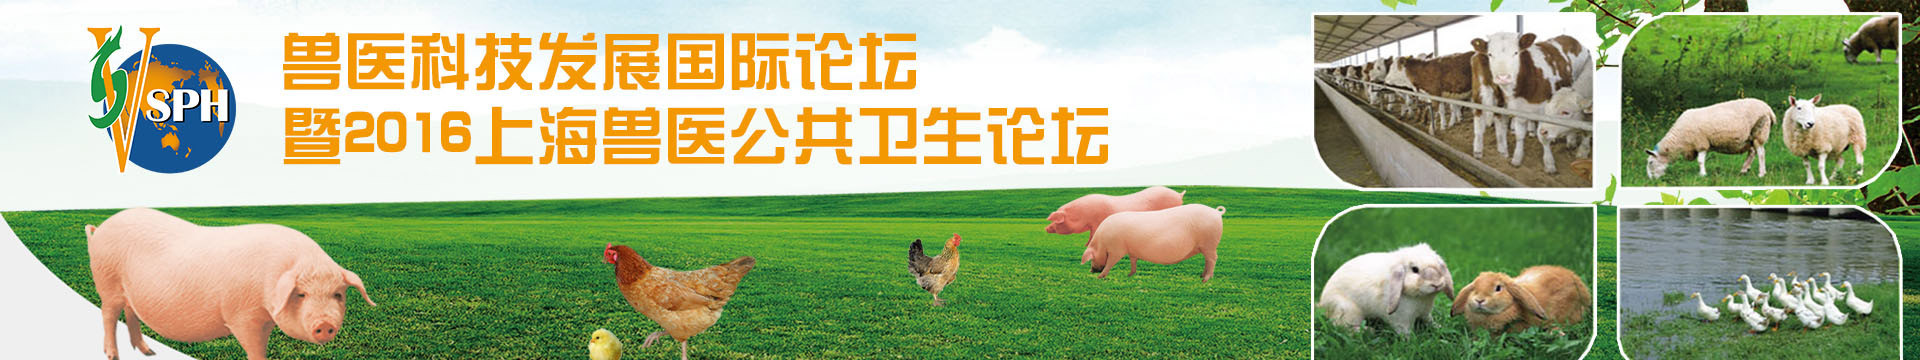 兽医科技发展国际论坛暨2016上海兽医公共卫生论坛